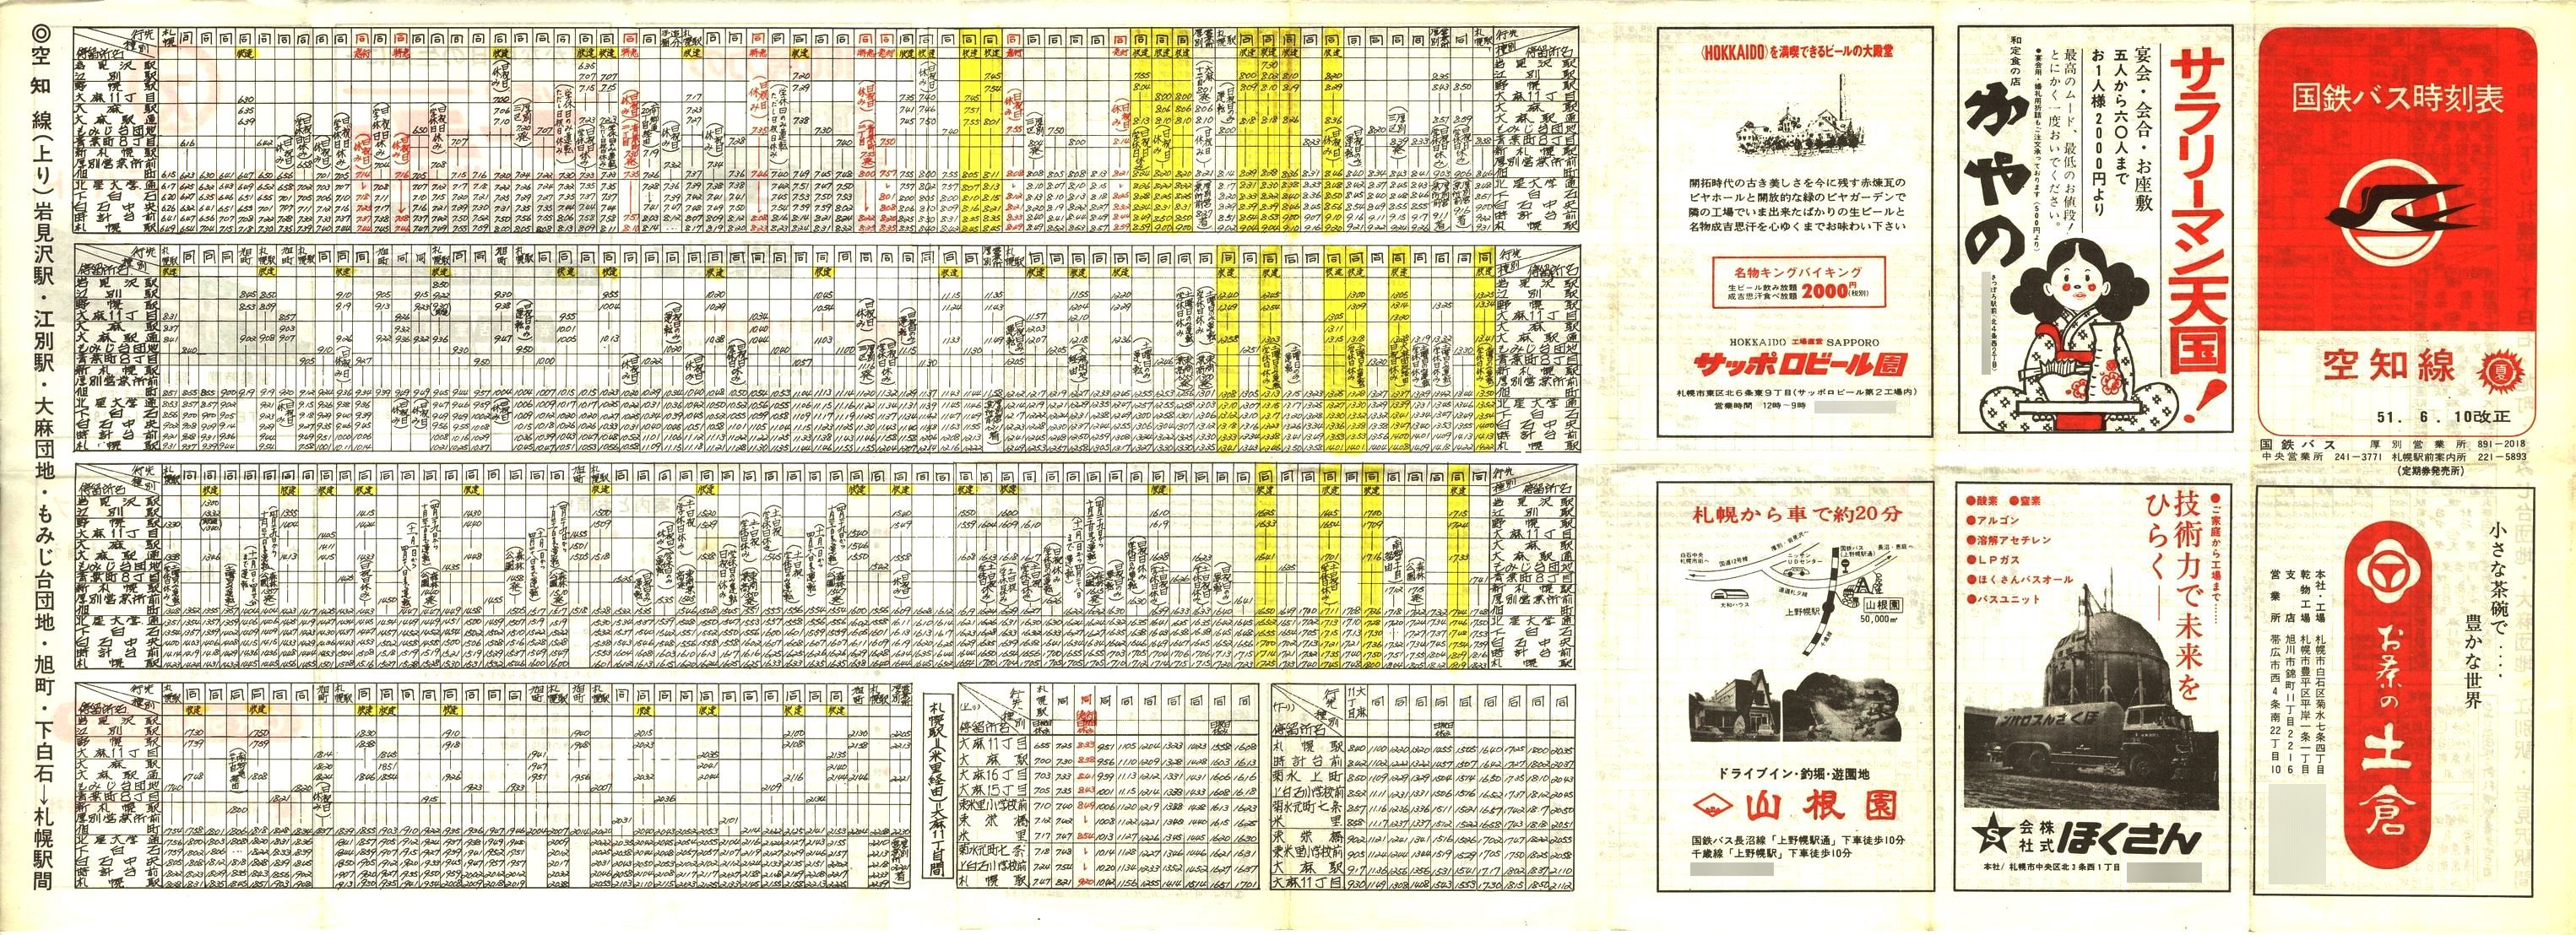 1976-06-10改正_国鉄バス_空知線時刻表表面